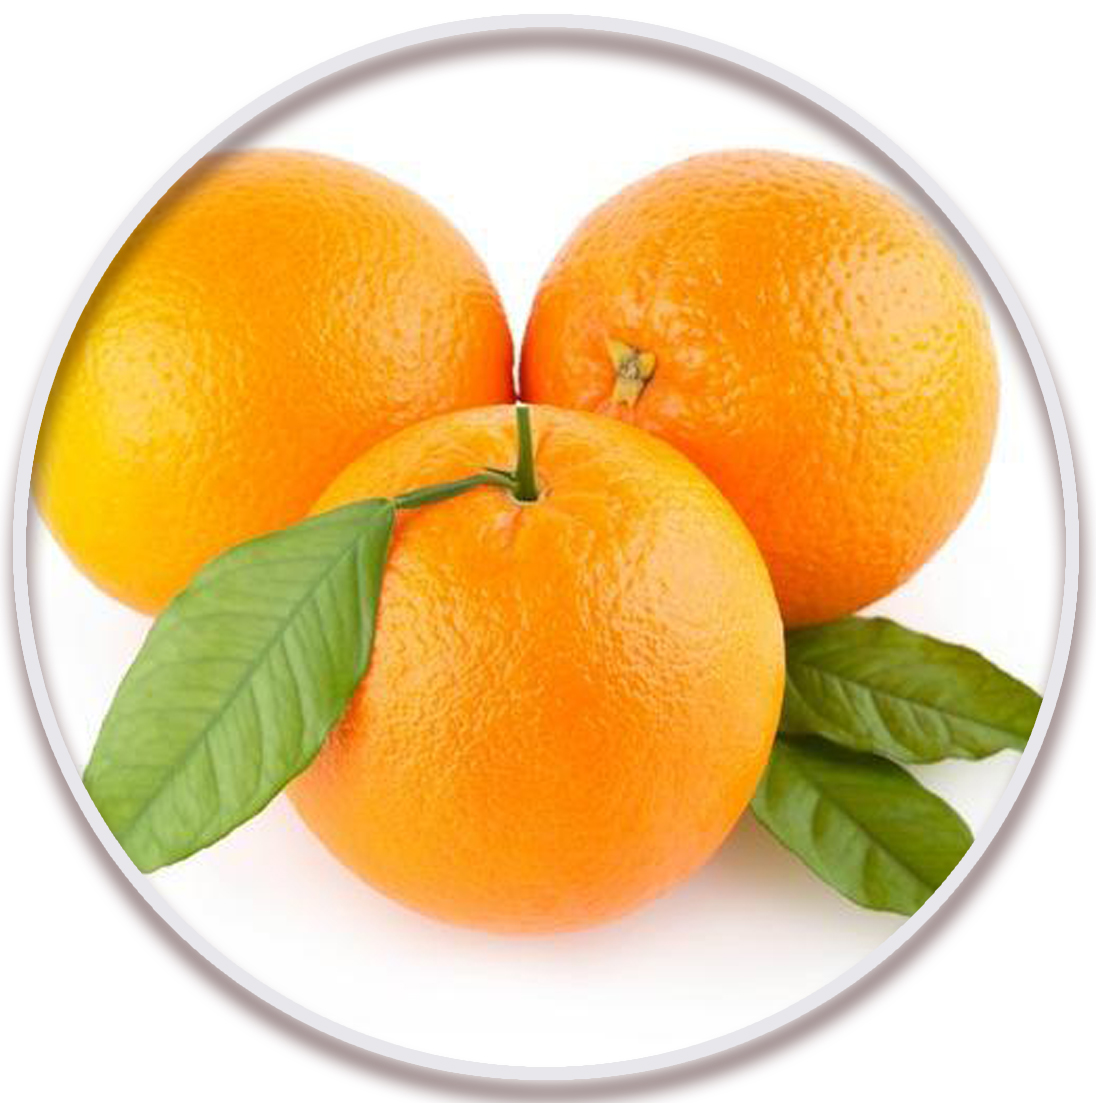 پرتقال سیاورز یا تنکابنی (Siavaraze Orange)